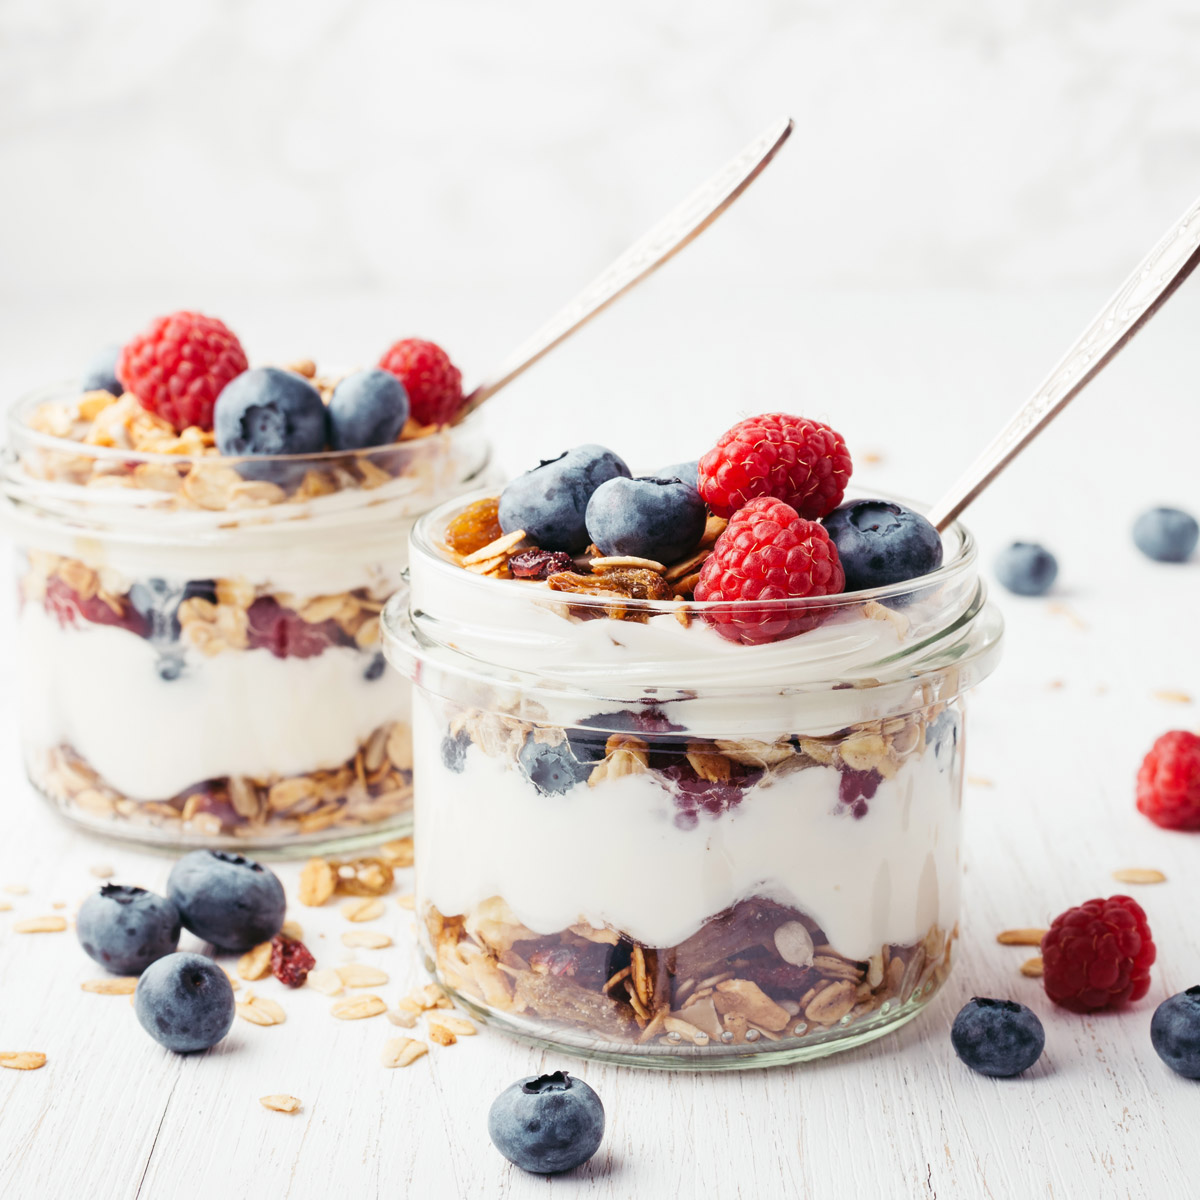 Is Yogurt and Granola Healthy